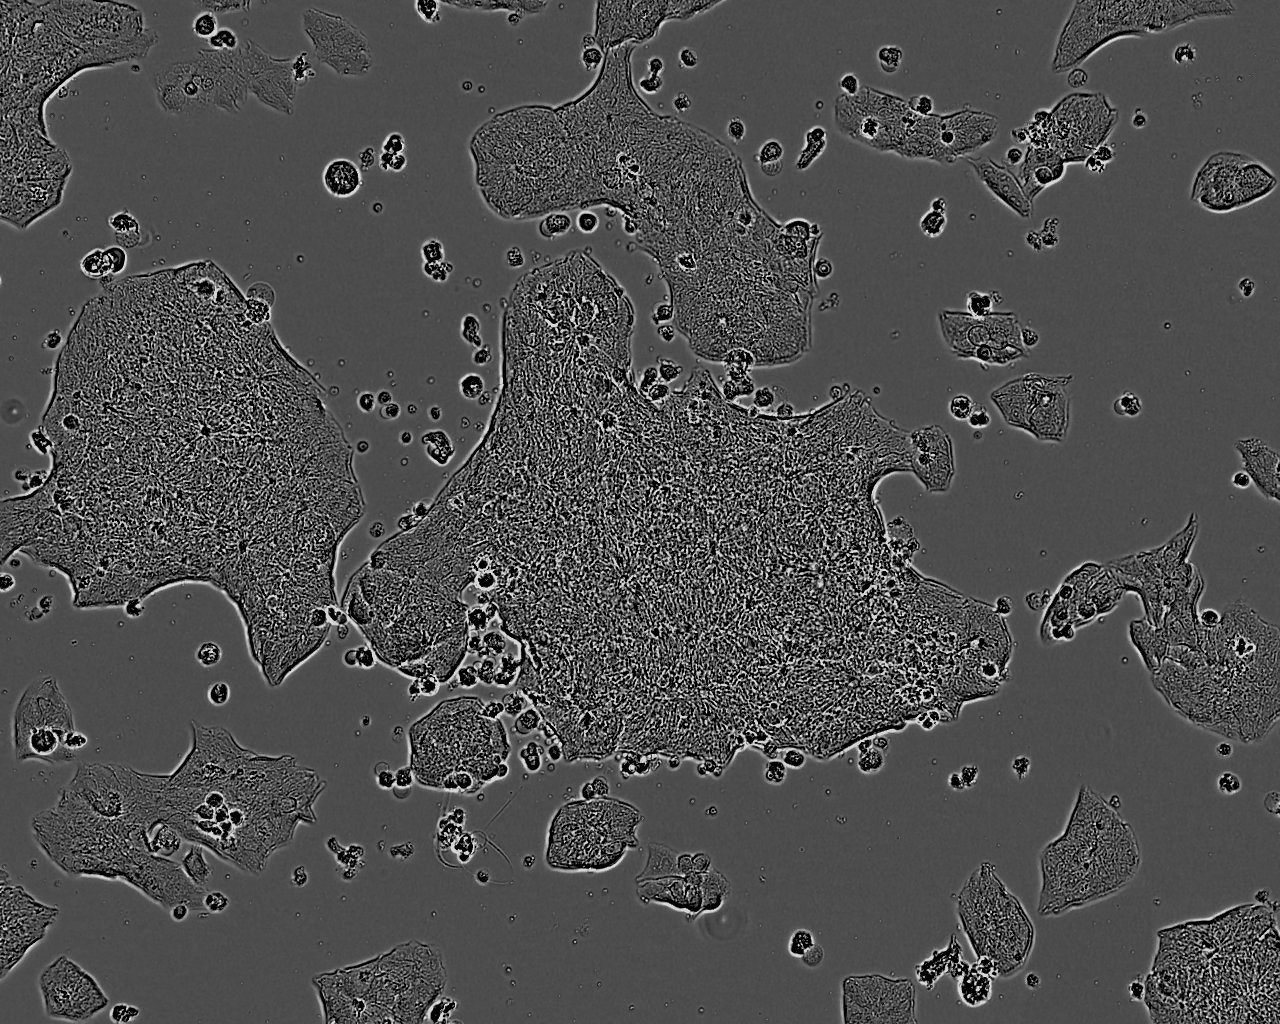 Sp2/0-Ag14 Cells|小鼠骨髓瘤需消化细胞系癌需消化细胞系